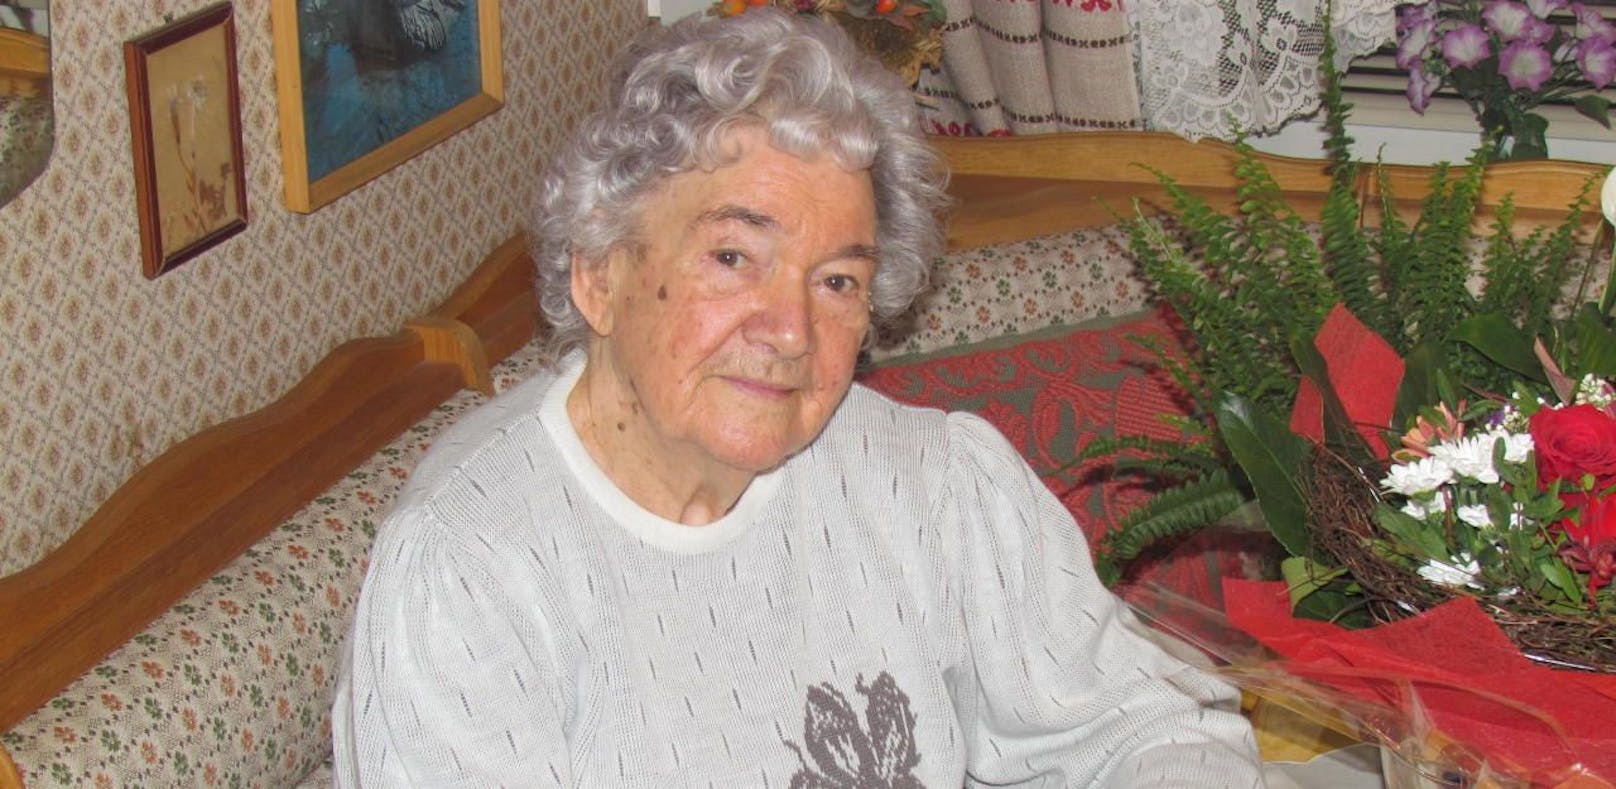 Rajskub an ihrem 95. Geburtstag vor rund 1,5 Jahren.